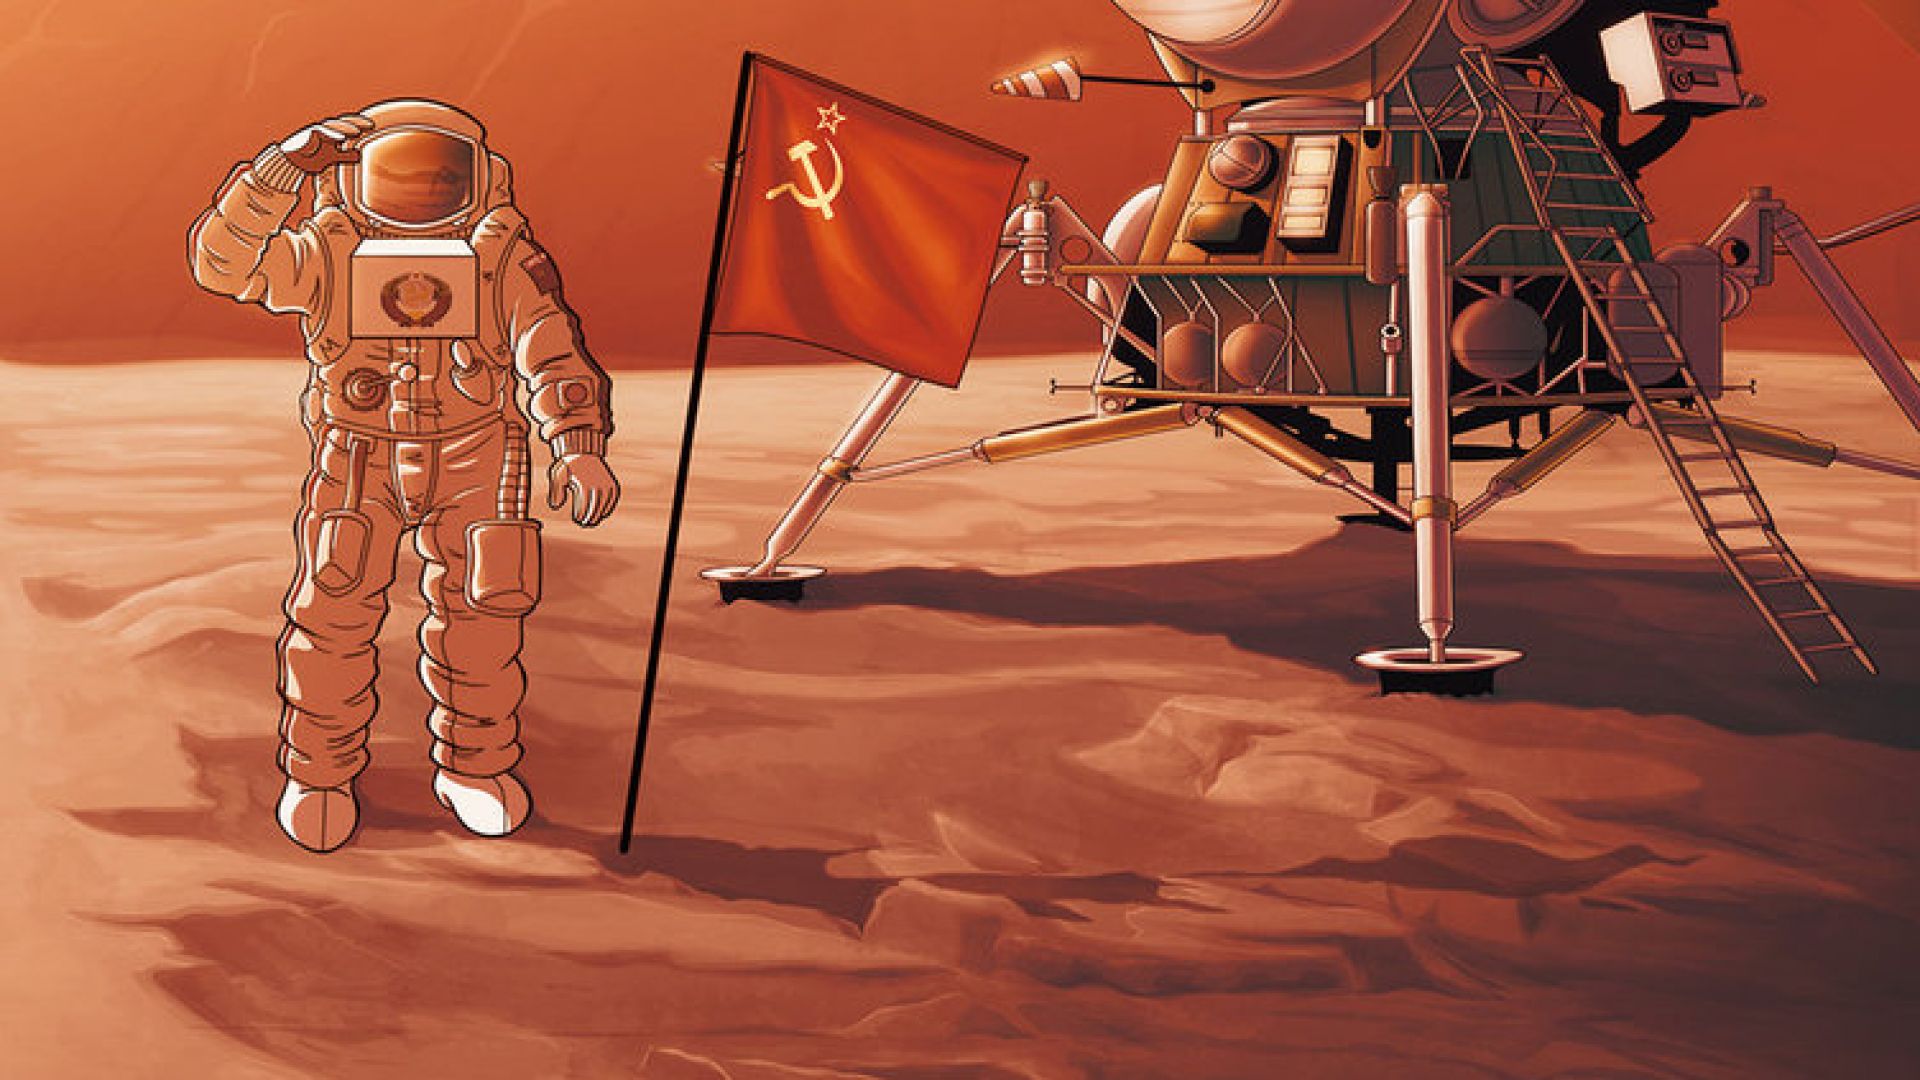 Планът на Корольов да прати хора на Марс през 70-те